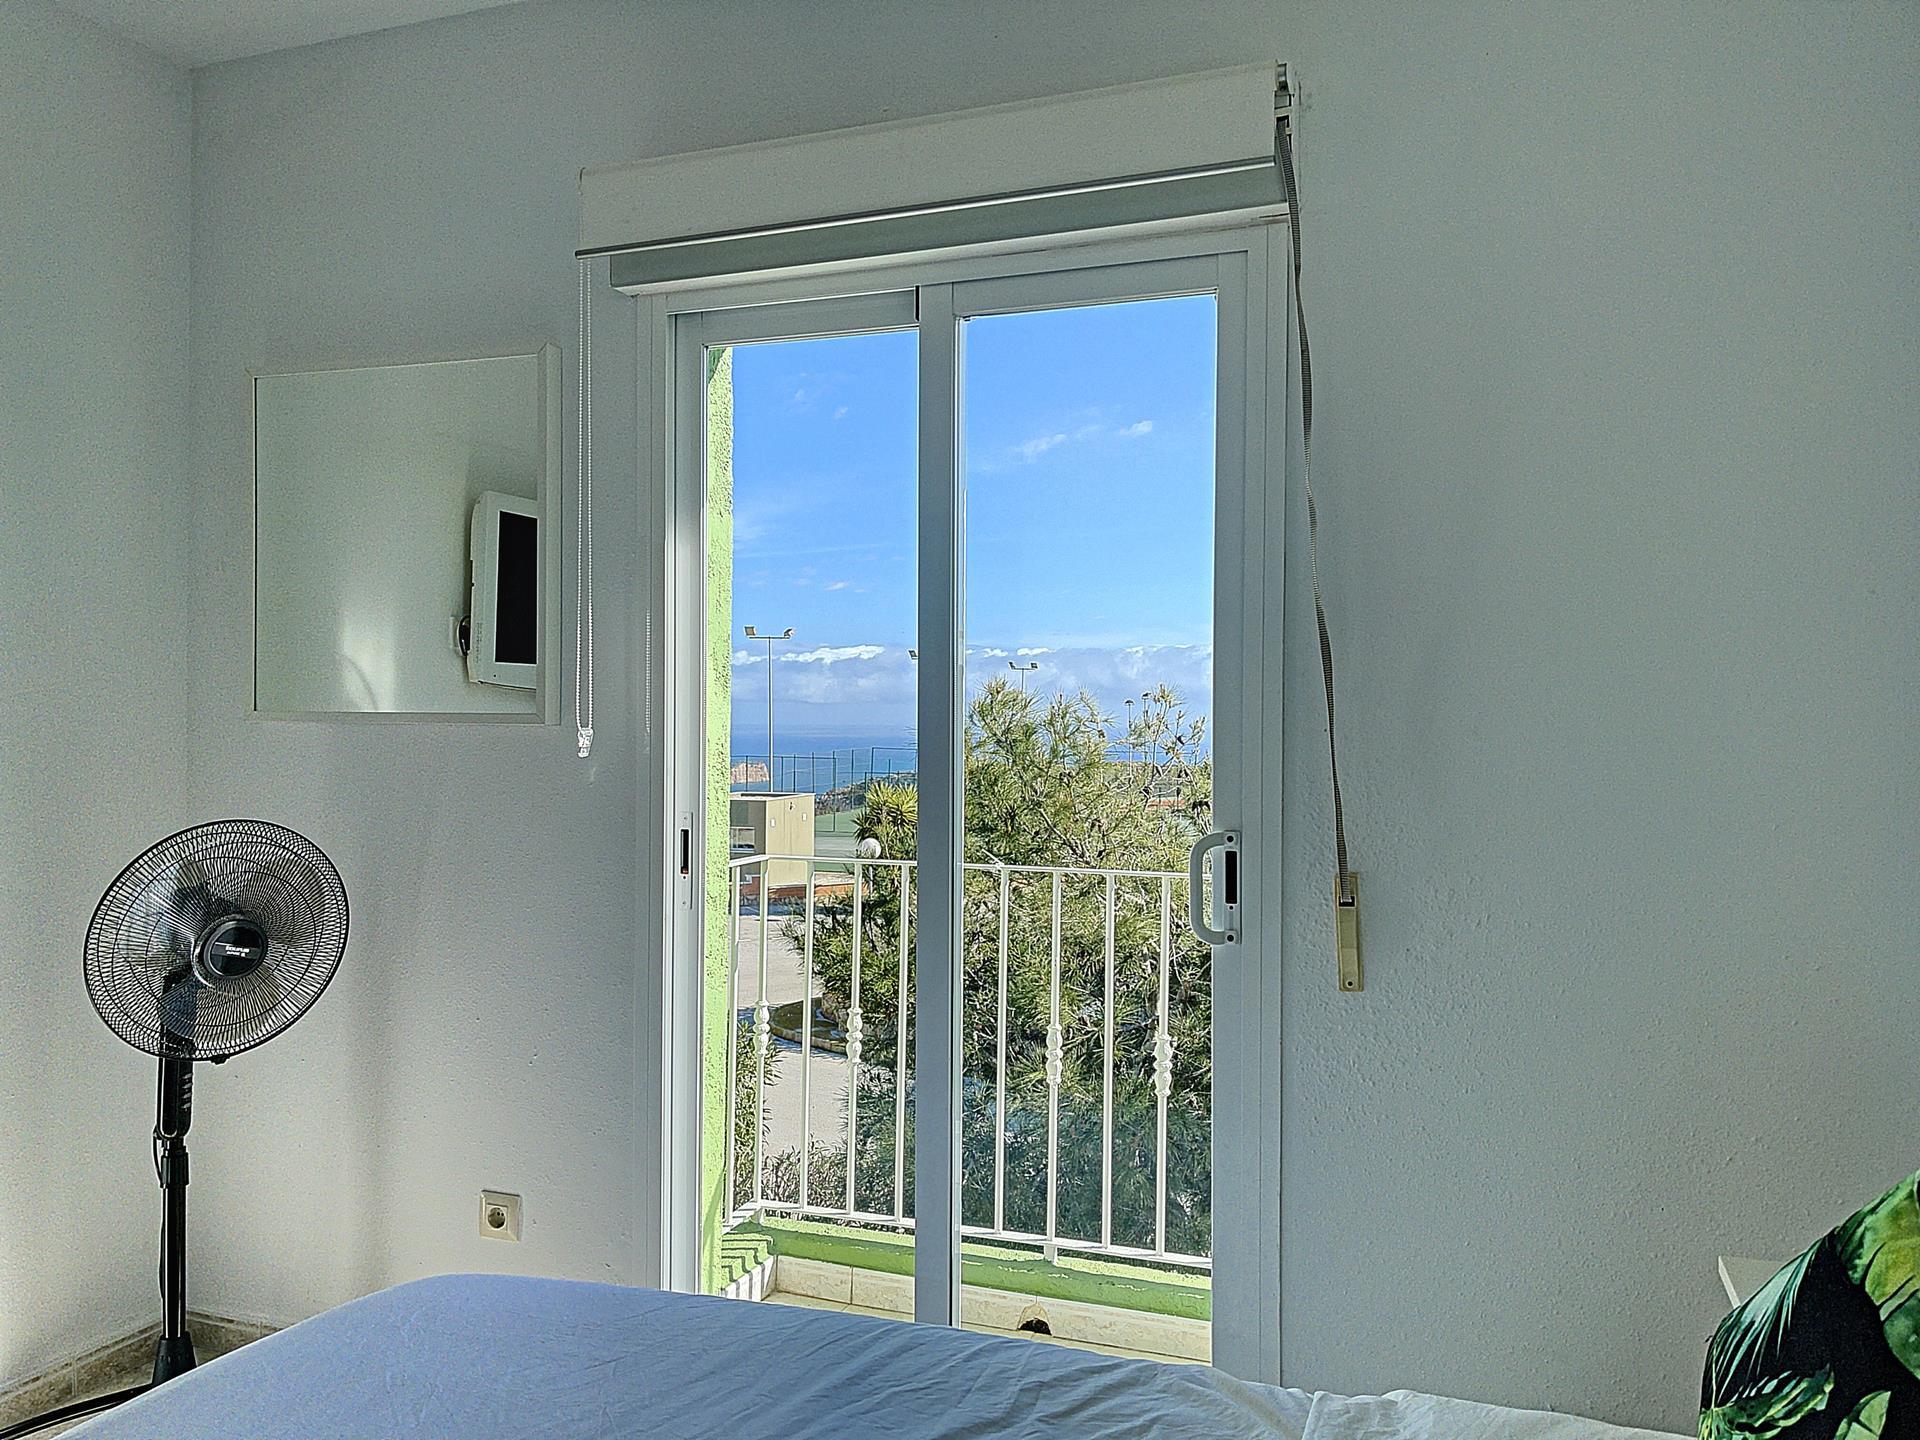 Offrant une vue sur la mer, cet appartement dispose d’une terrasse ensoleillée